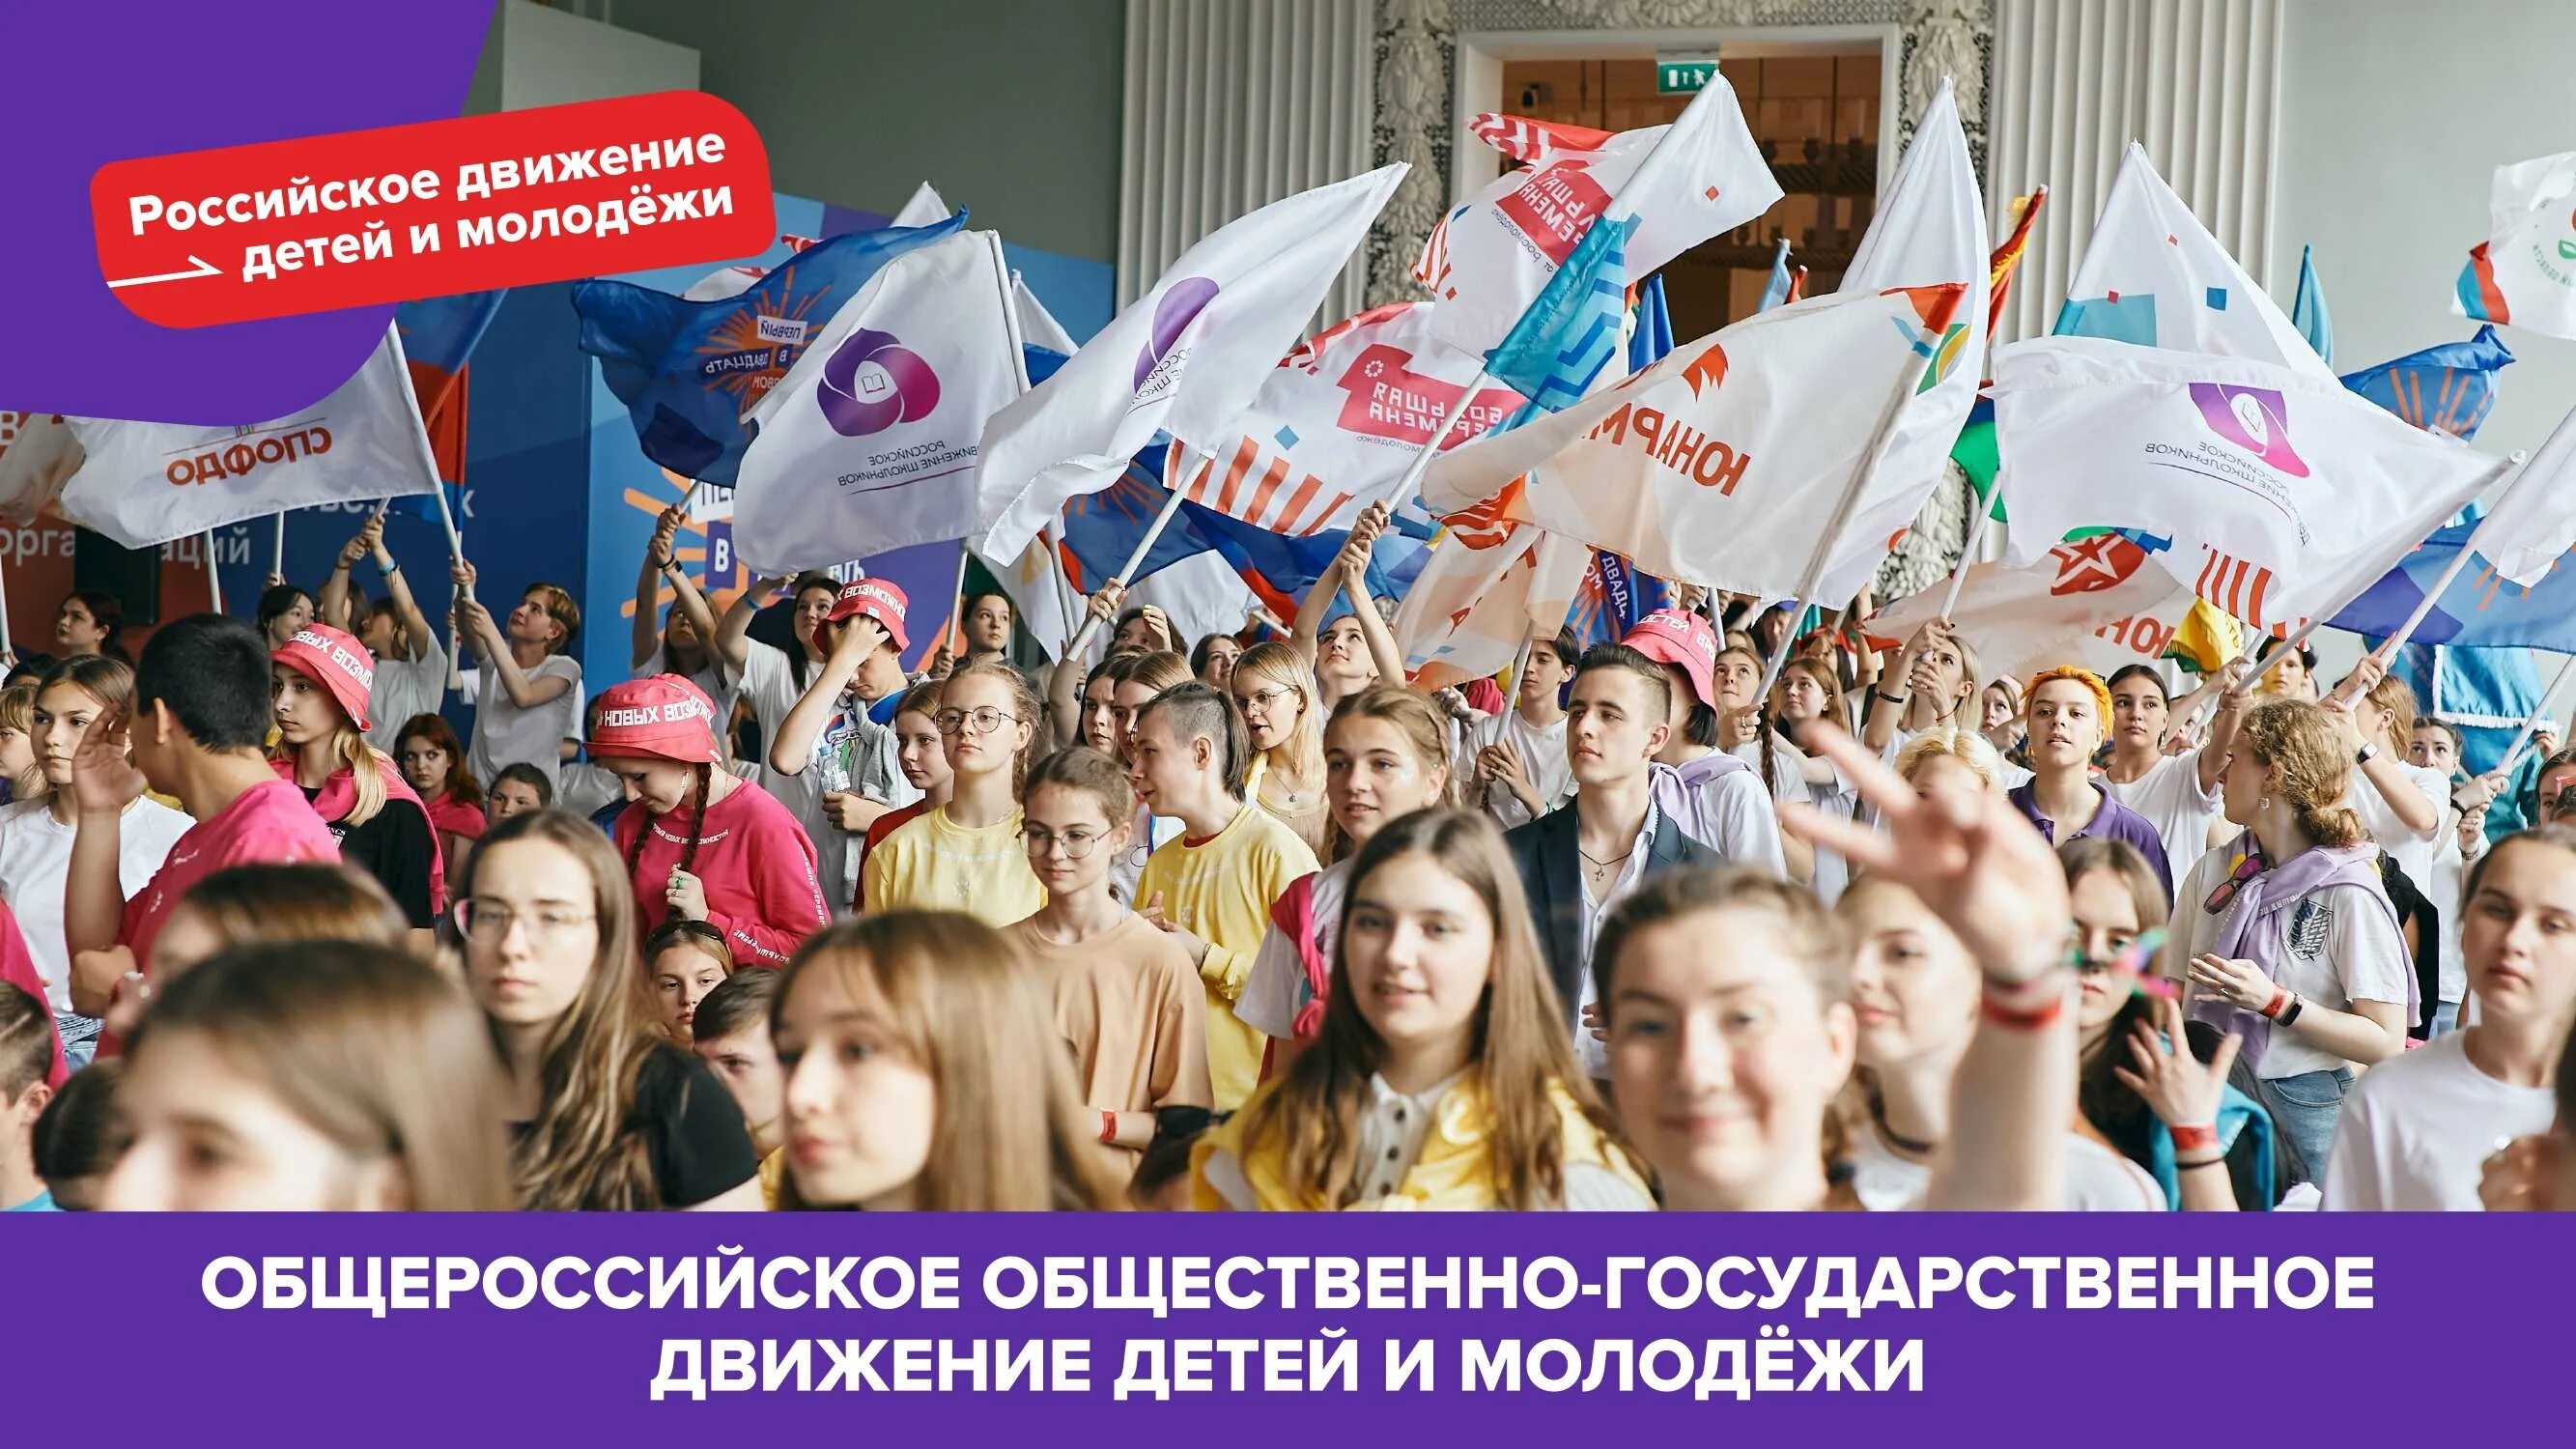 Движение первых поздравление. Российское движение детей и молодежи. Россицское движение детей и молодёжи. Российское движение детей и молодёжи движение. Российское движение детей и молодежи движение первых.